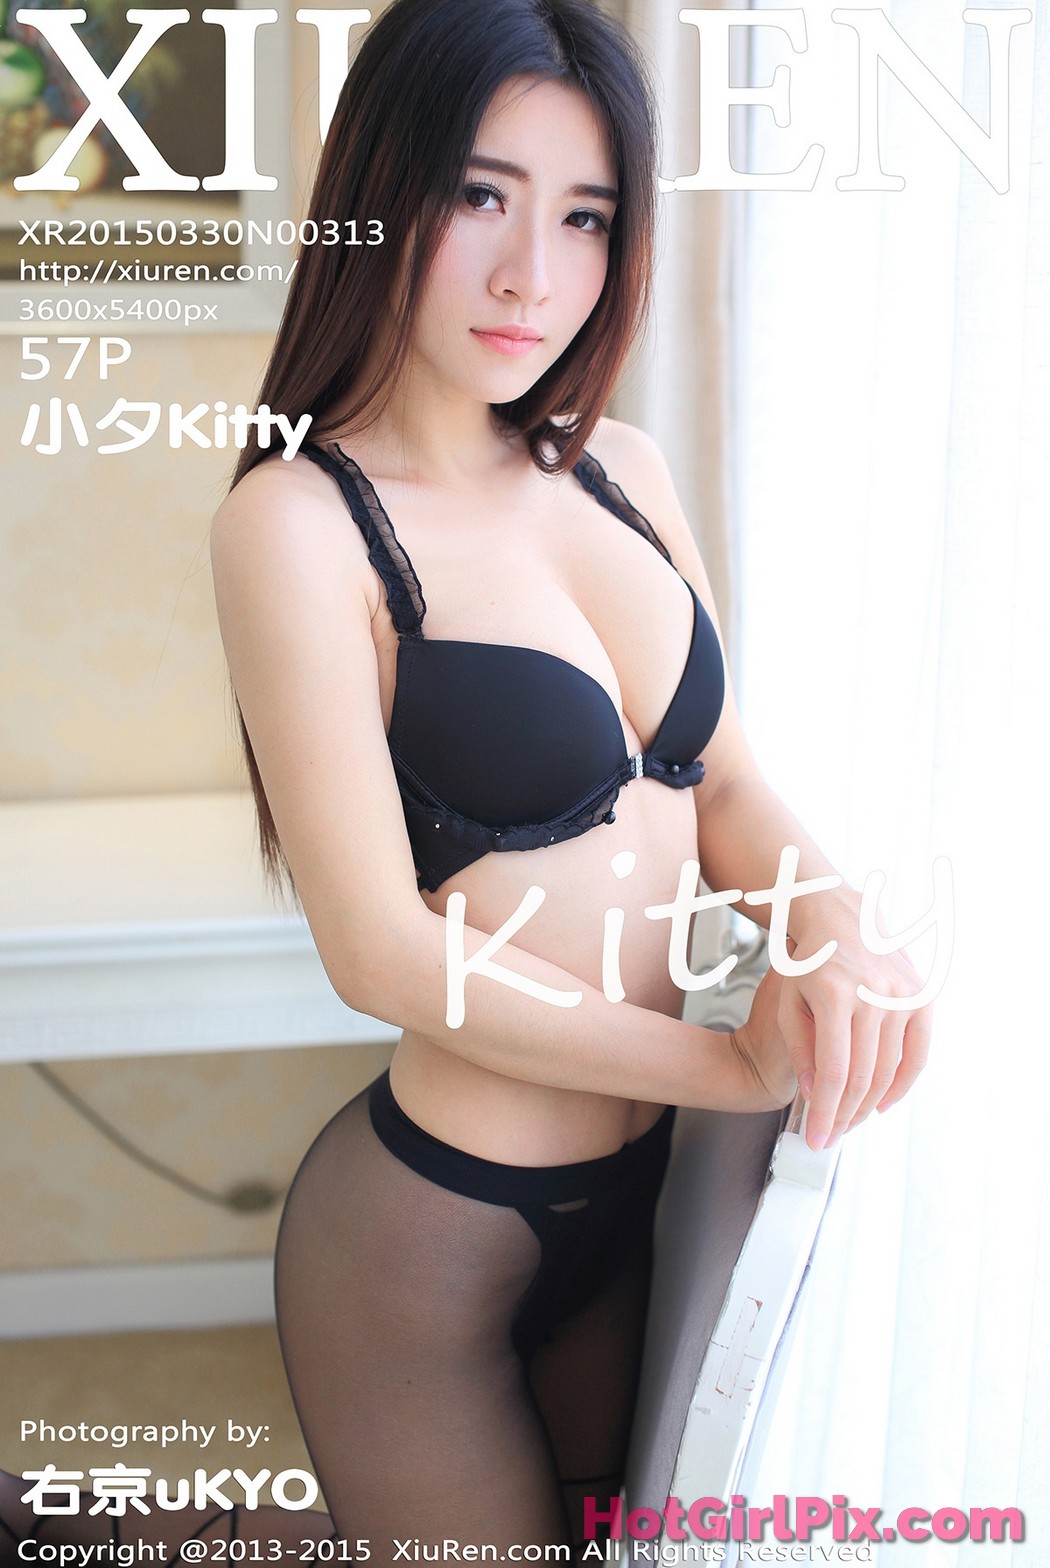 [XIUREN] No.313 Xiao Xi 小夕kitty Cover Photo